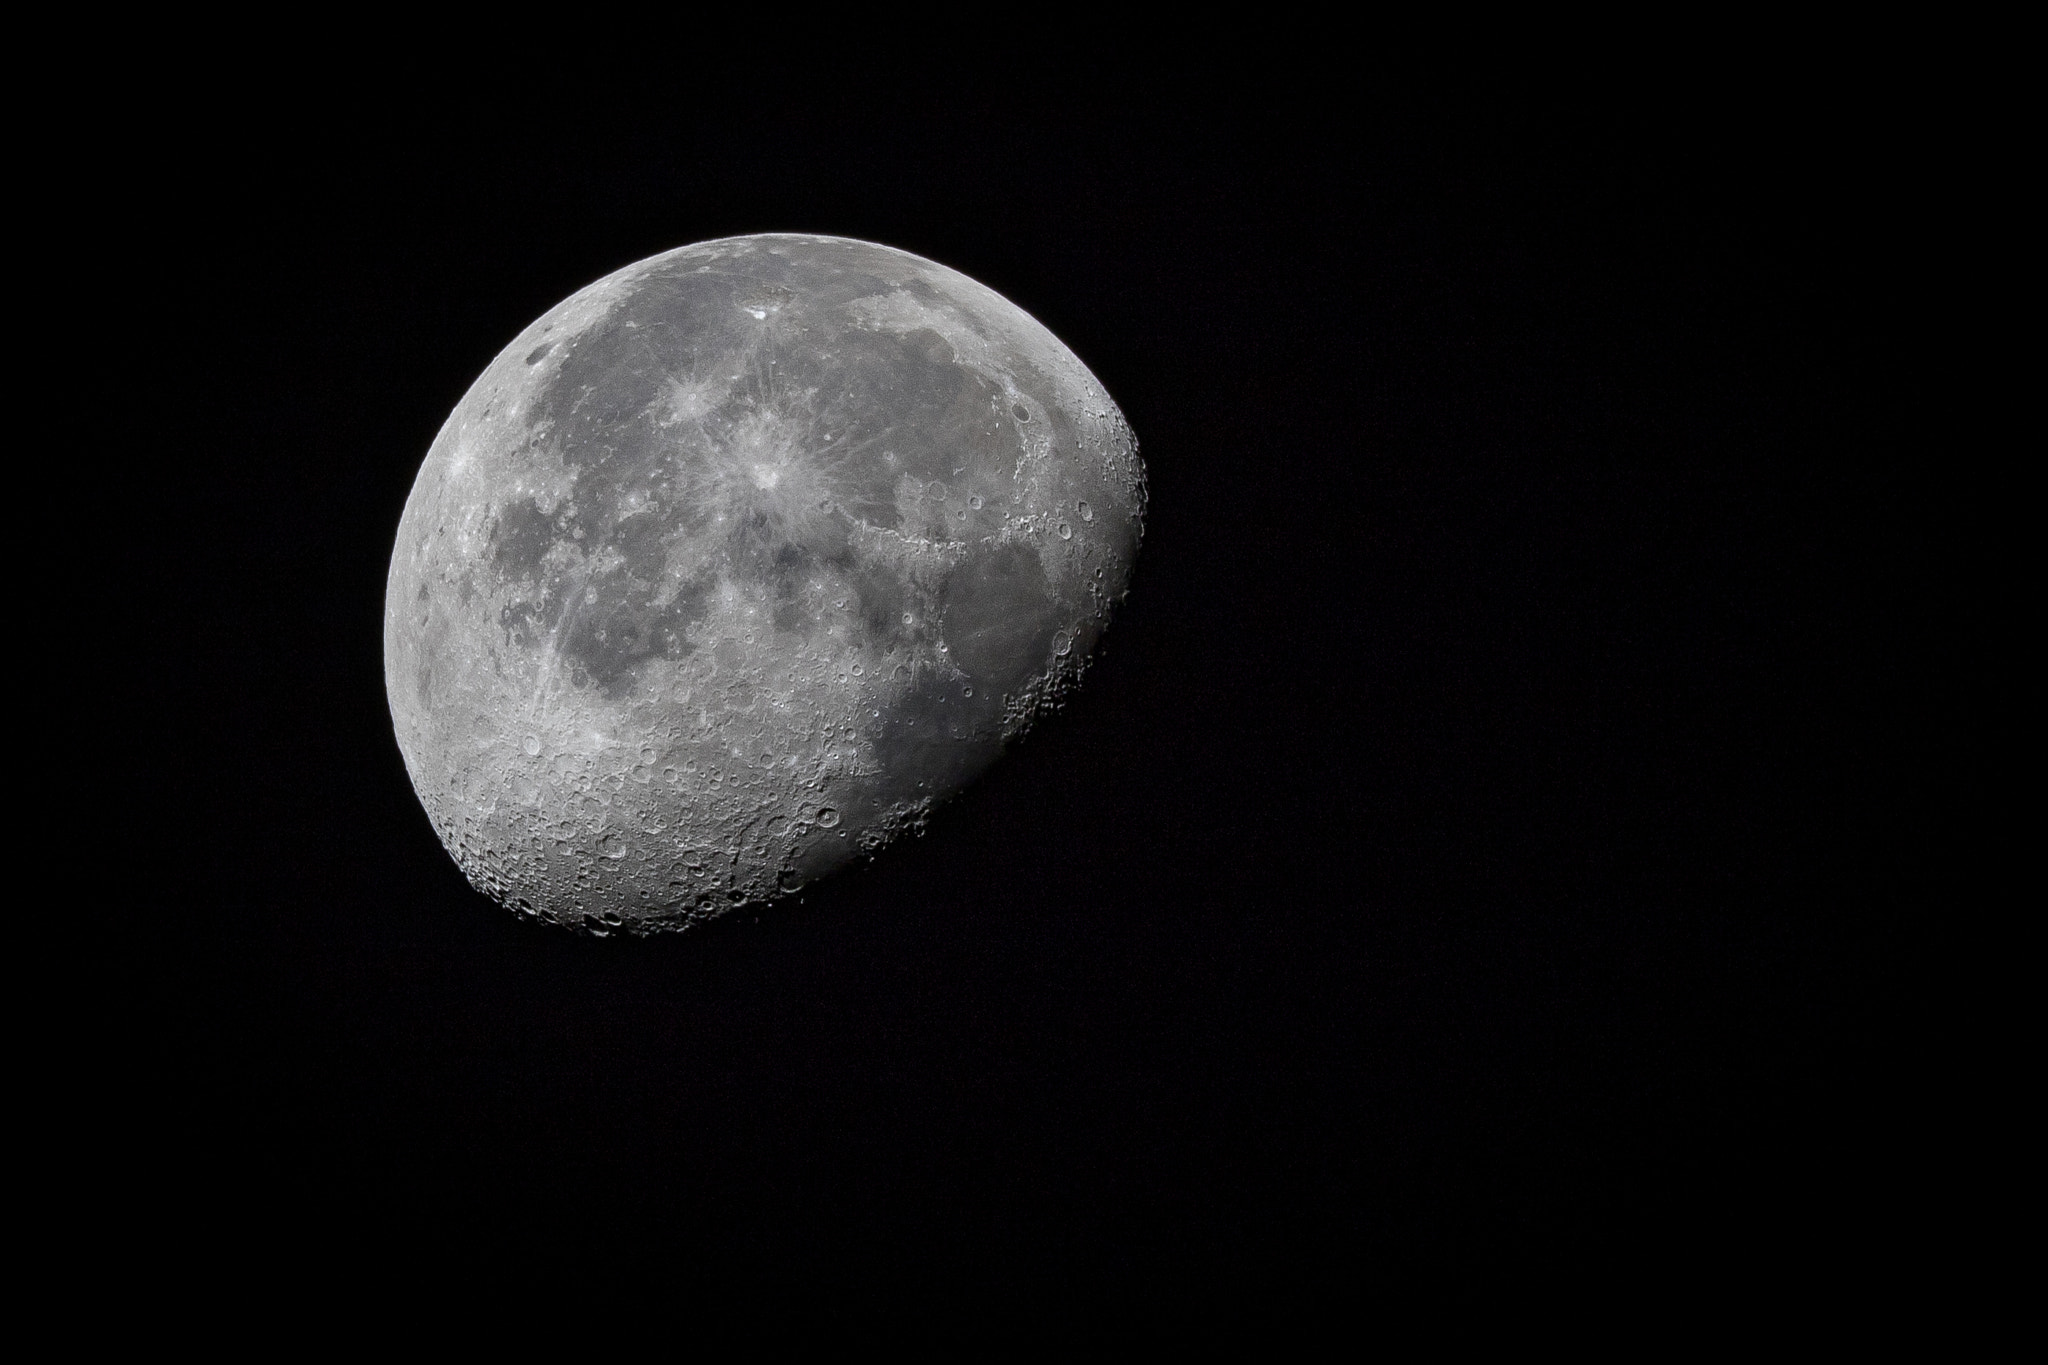 Canon EOS 7D Mark II + Canon EF 400mm F2.8L IS II USM sample photo. Waning gibbous moon photography